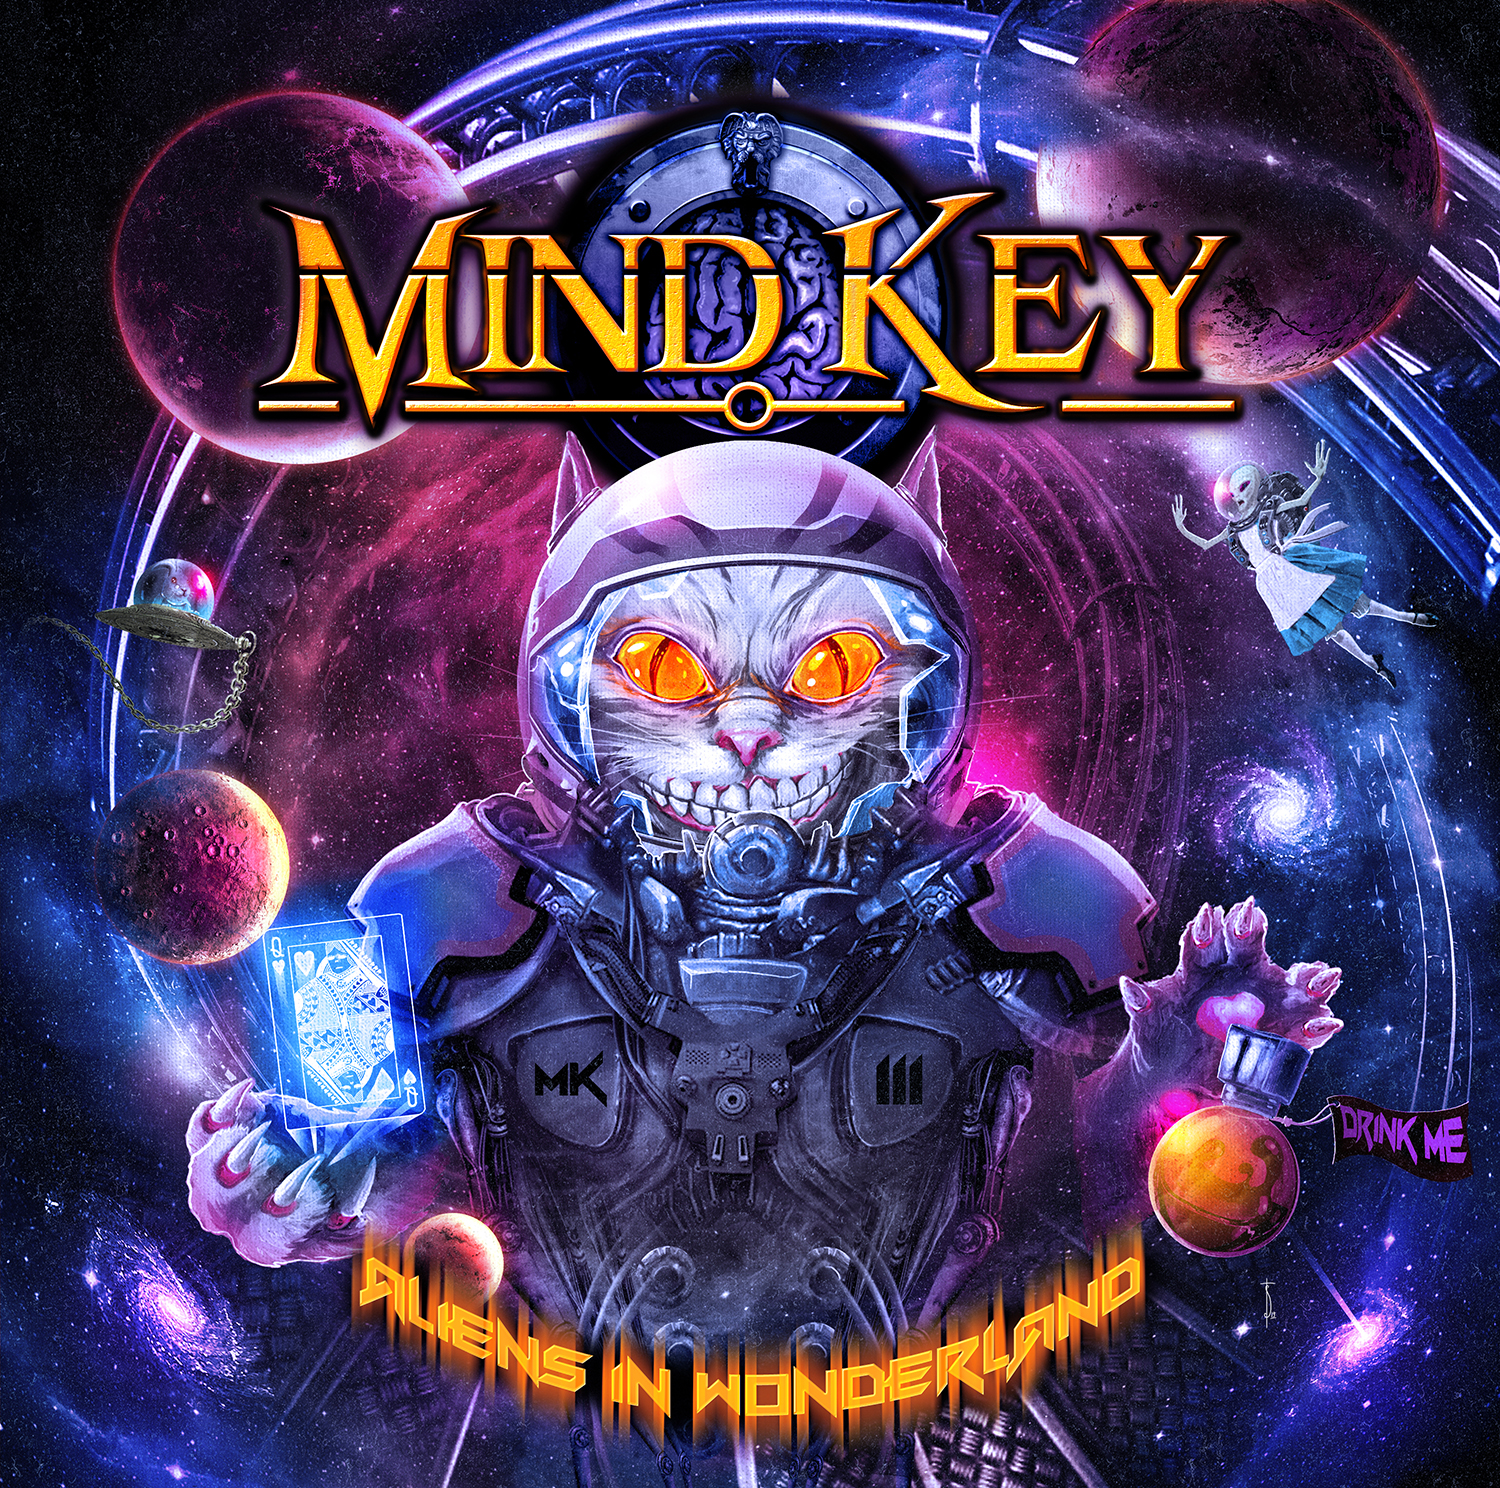 MIND KEY - “MK III - Aliens In Wonderland”